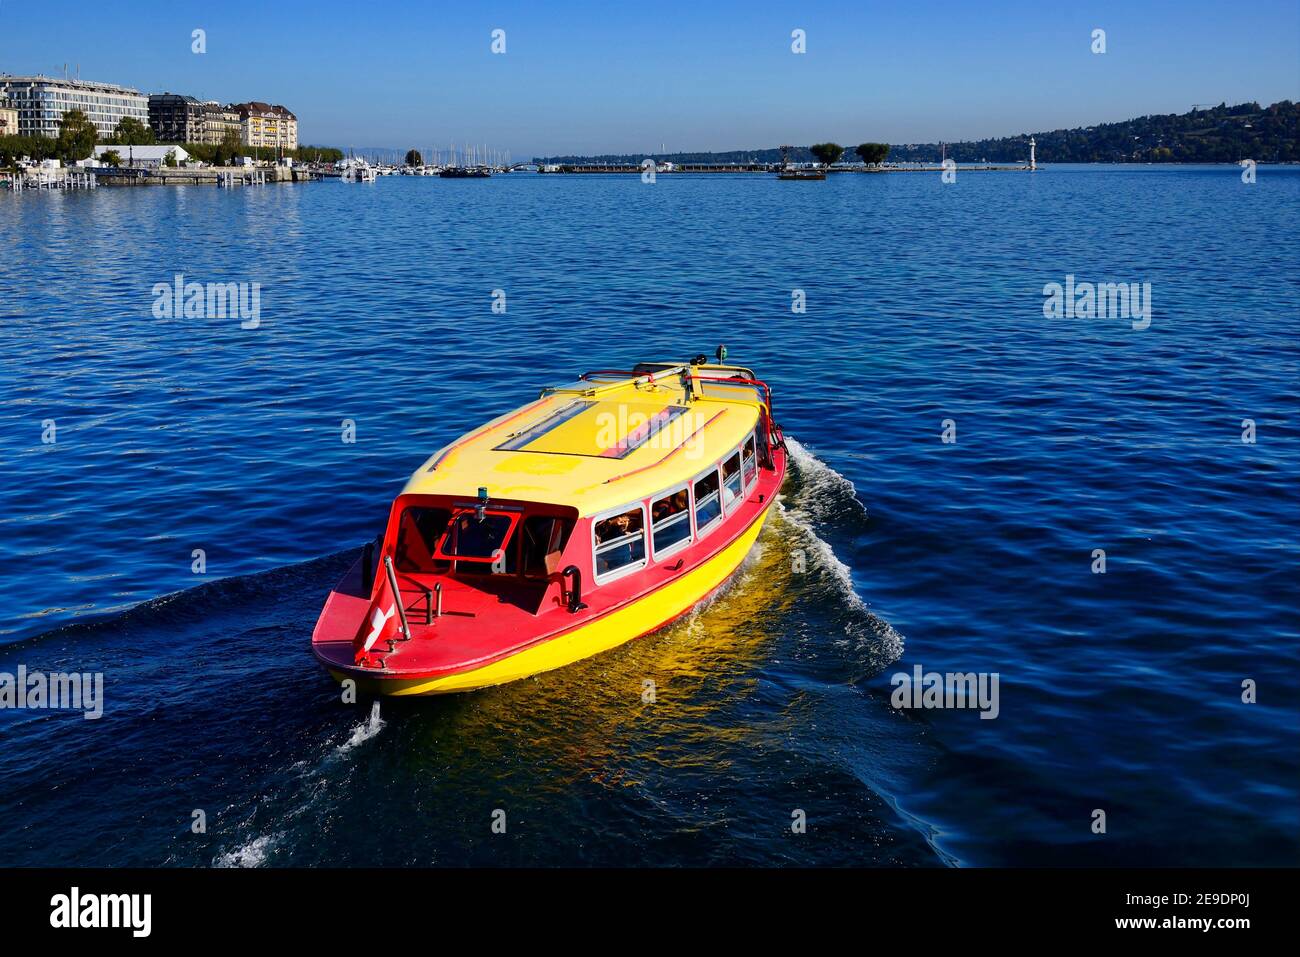 El barco amarillo llamado Mouette Genevoise llamado también tranvías de agua transporte público de agua que conecta las orillas del lago de Ginebra, Ginebra, Suiza, Europa Foto de stock